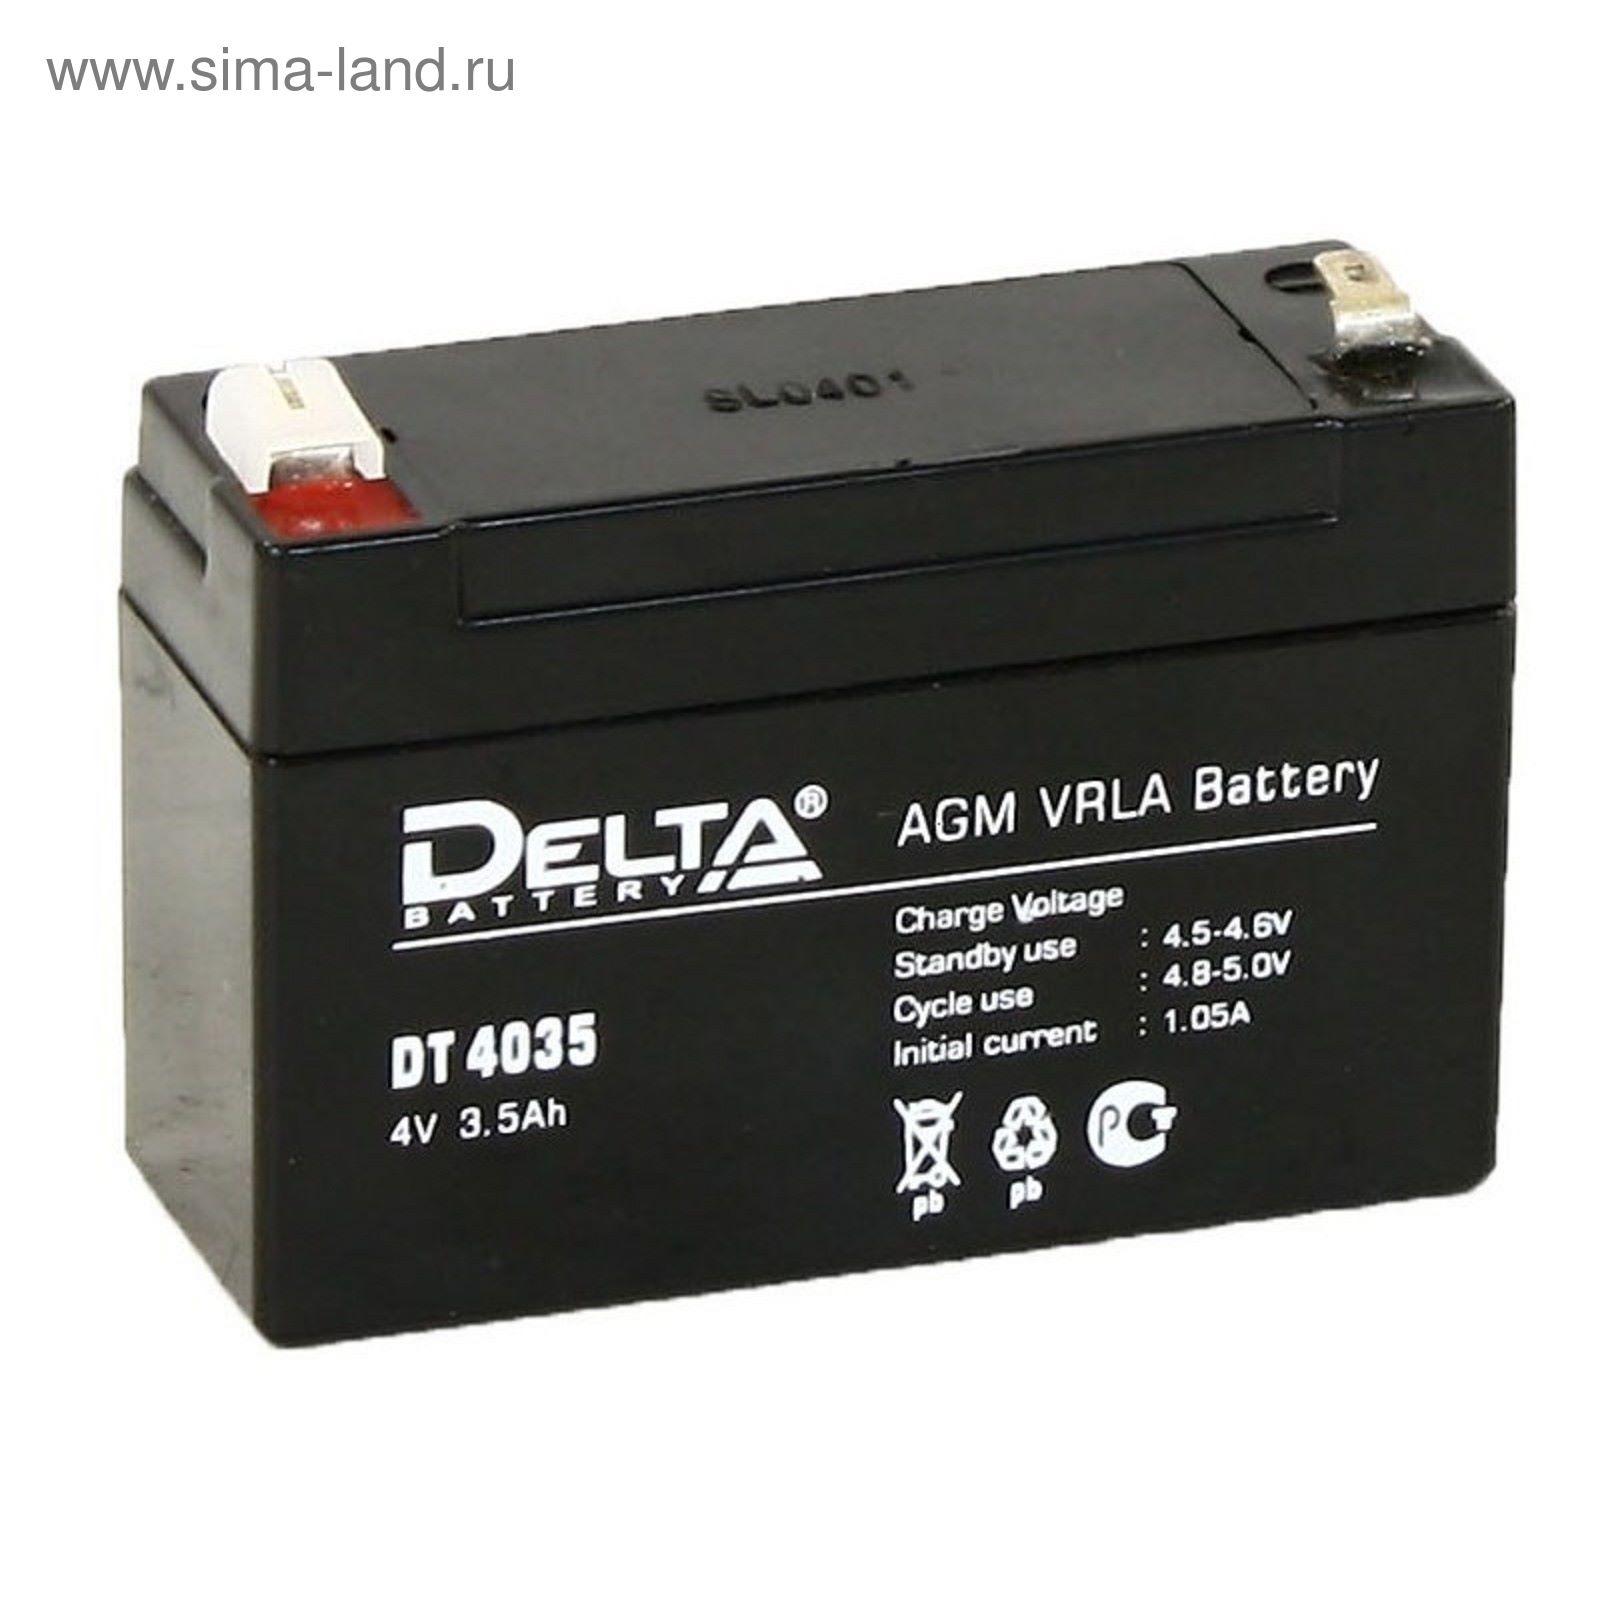 Аккумулятор 3 5 вольт. Delta DT 4035 (4в/3.5Ач). Батарея для ИБП Delta DT 6033. Аккумуляторная батарея Delta DT 4035. Аккумулятор Delta 4 Ач.